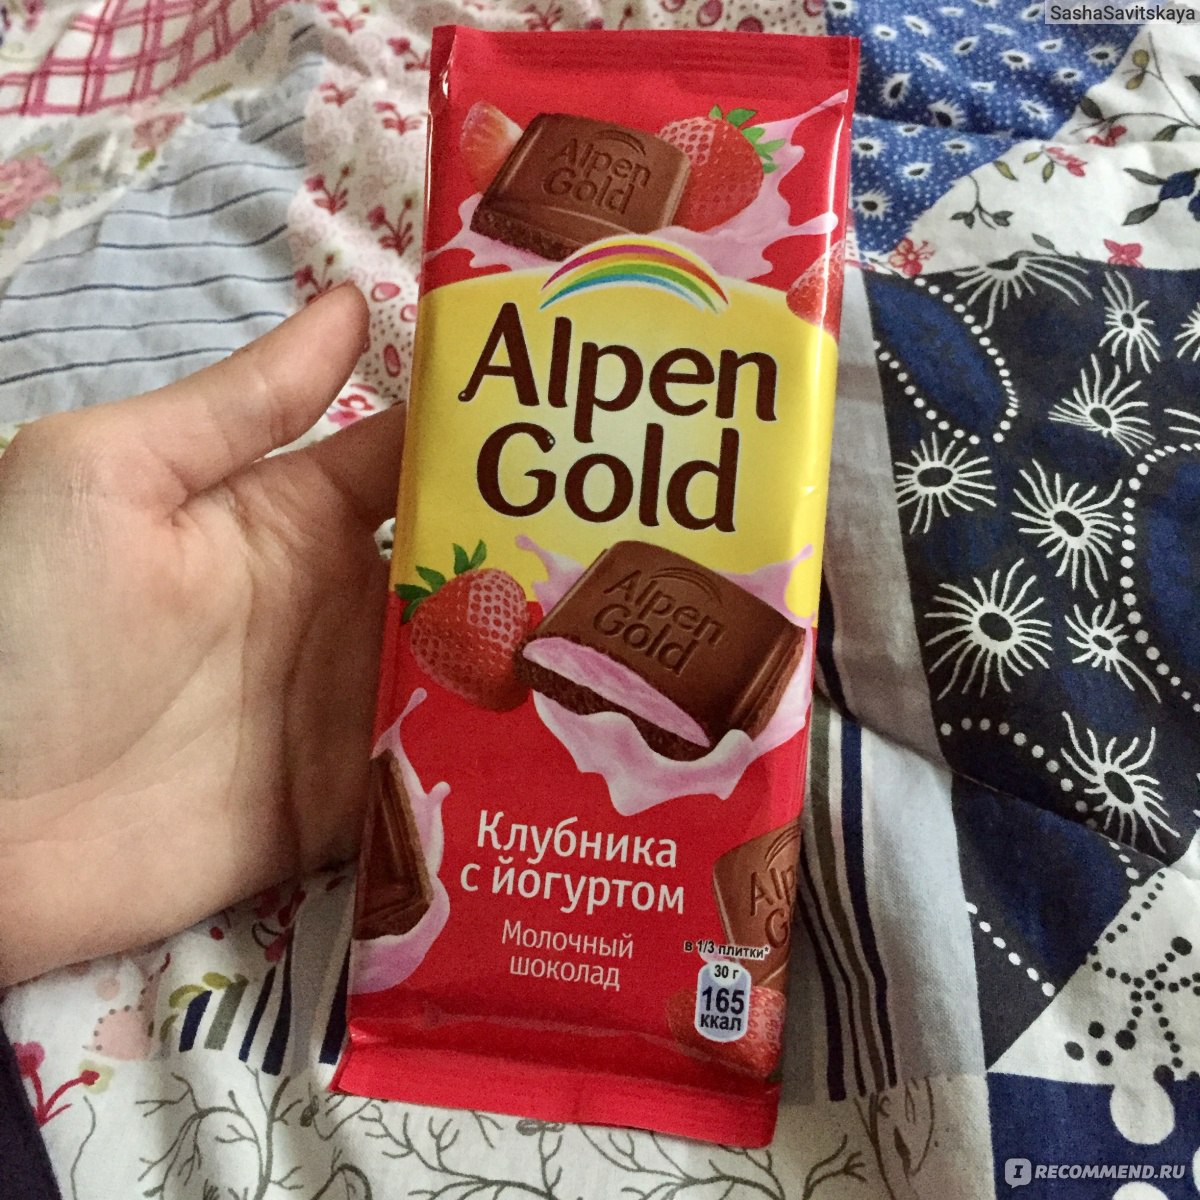 Клубничный шоколад Альпен Гольд